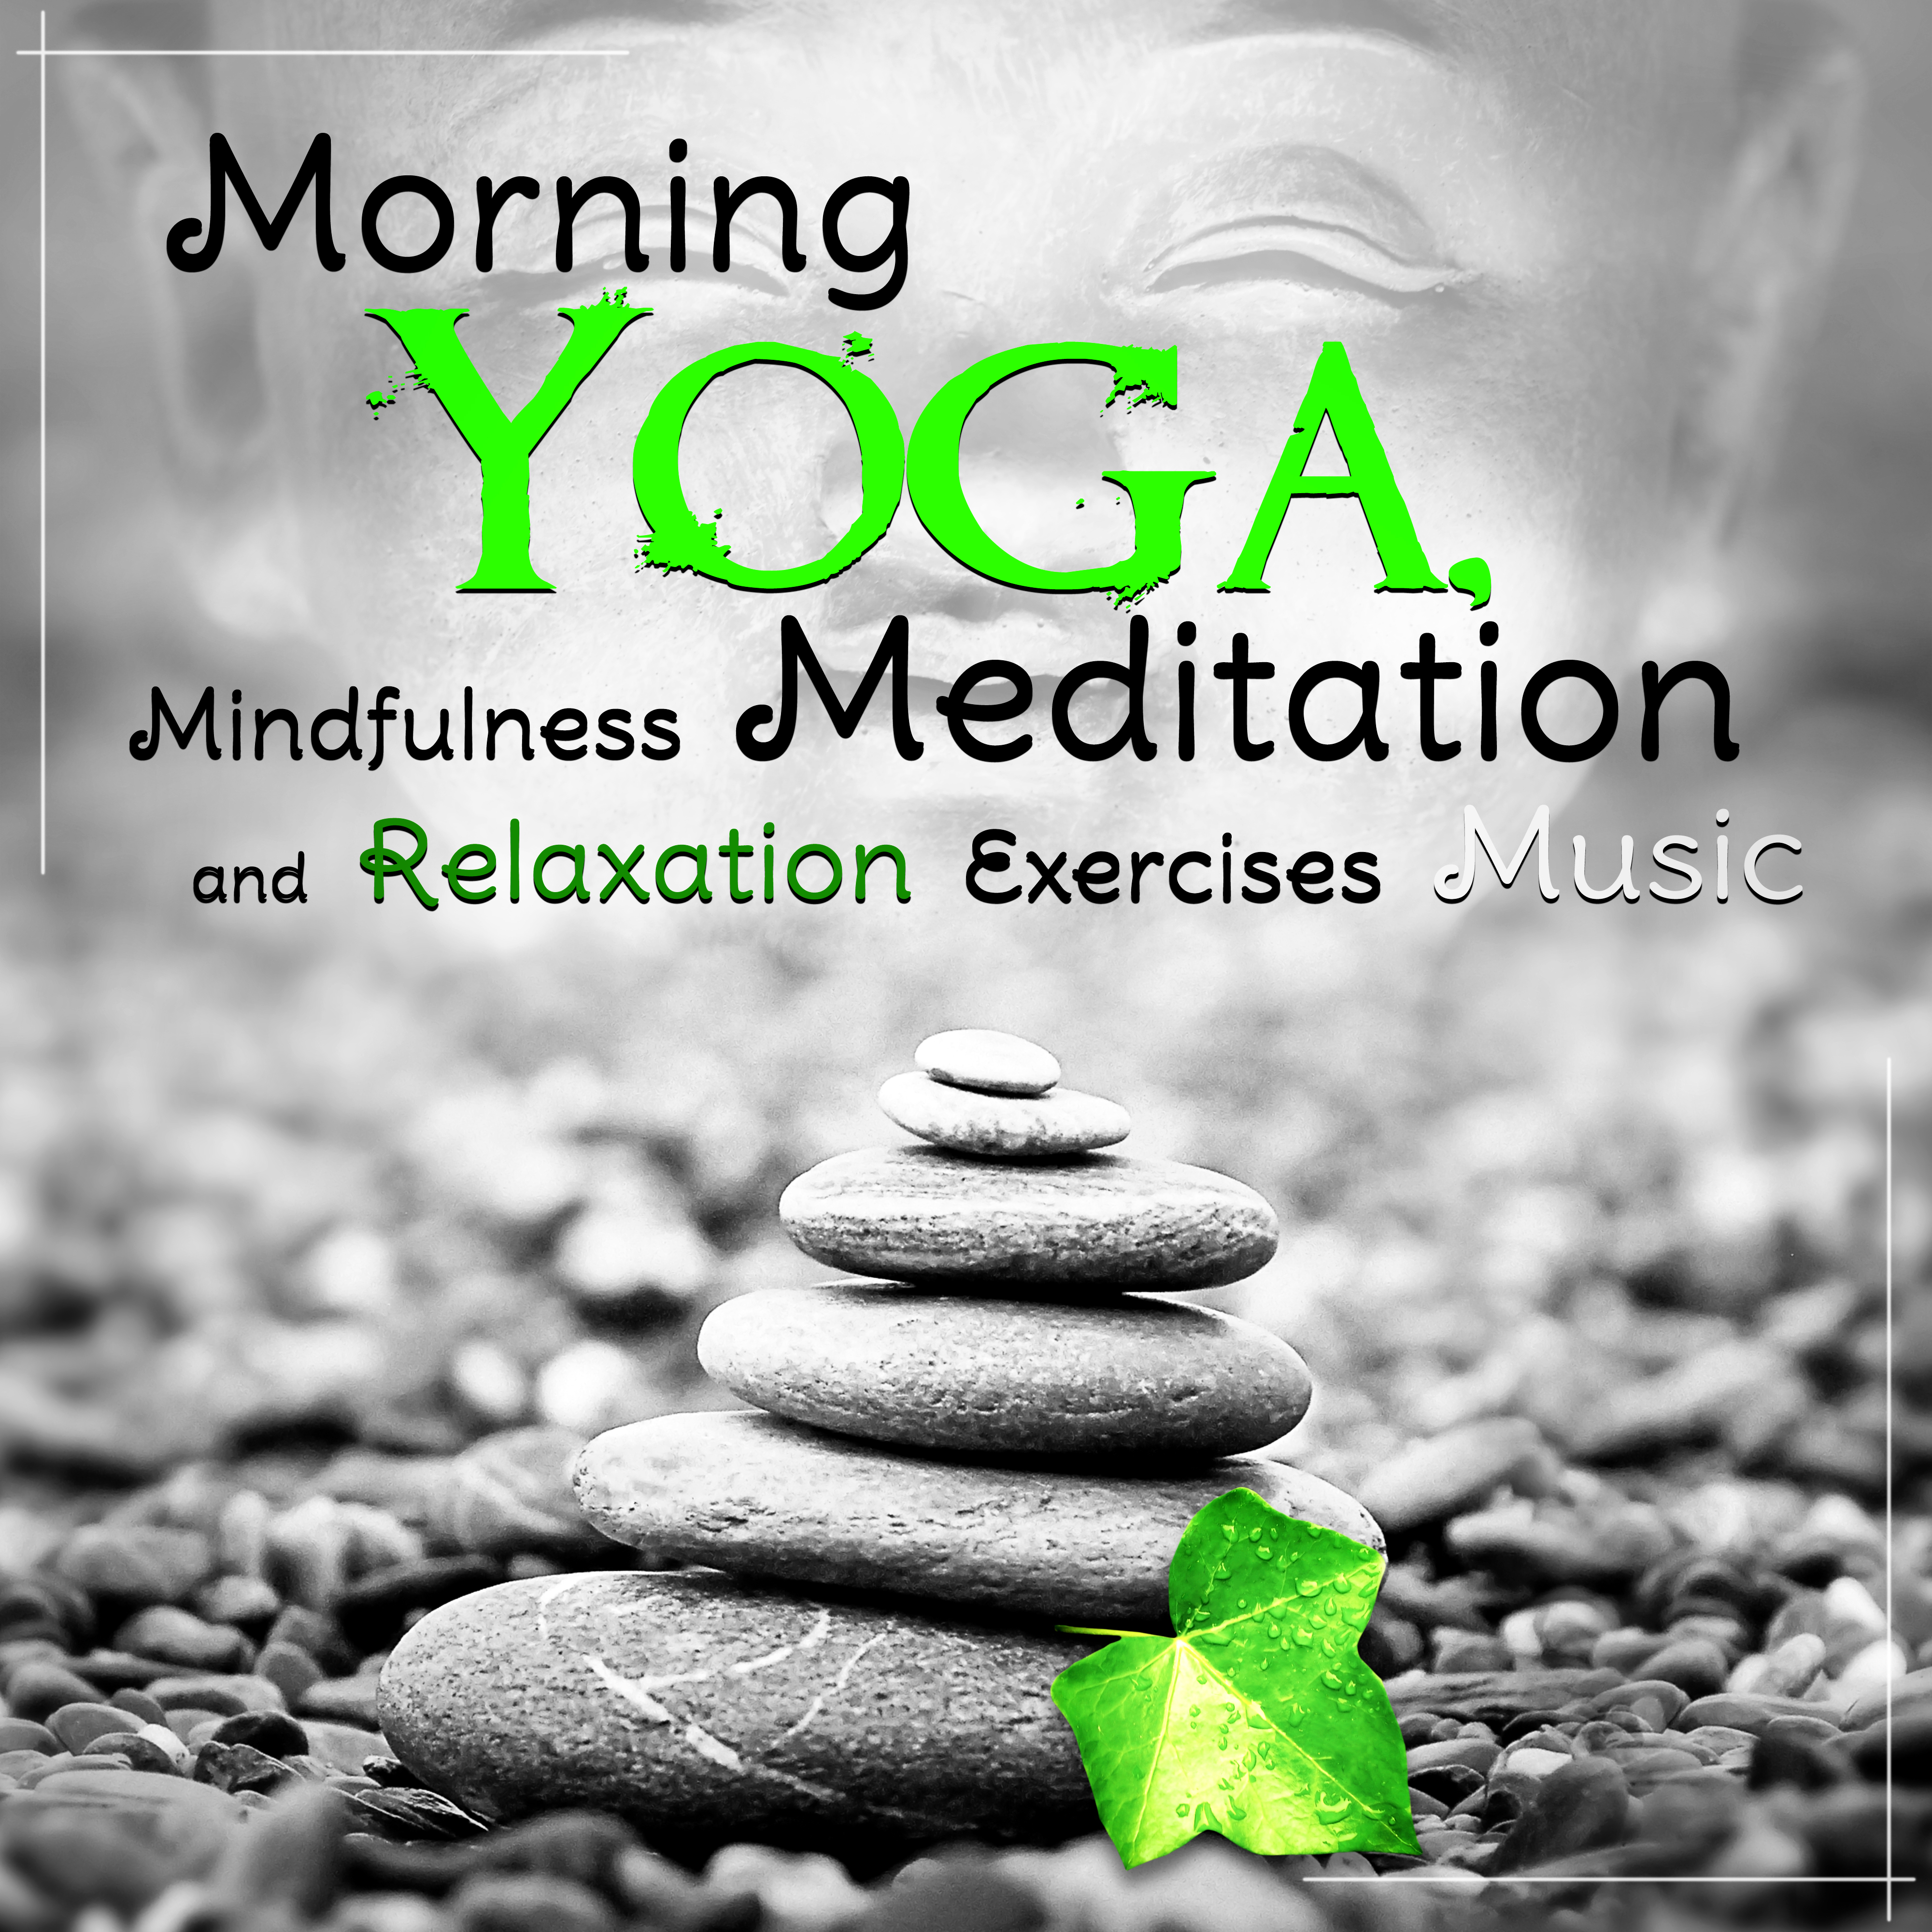 Morning Yoga, Mindfulness Meditation and Relaxation Exercises Music